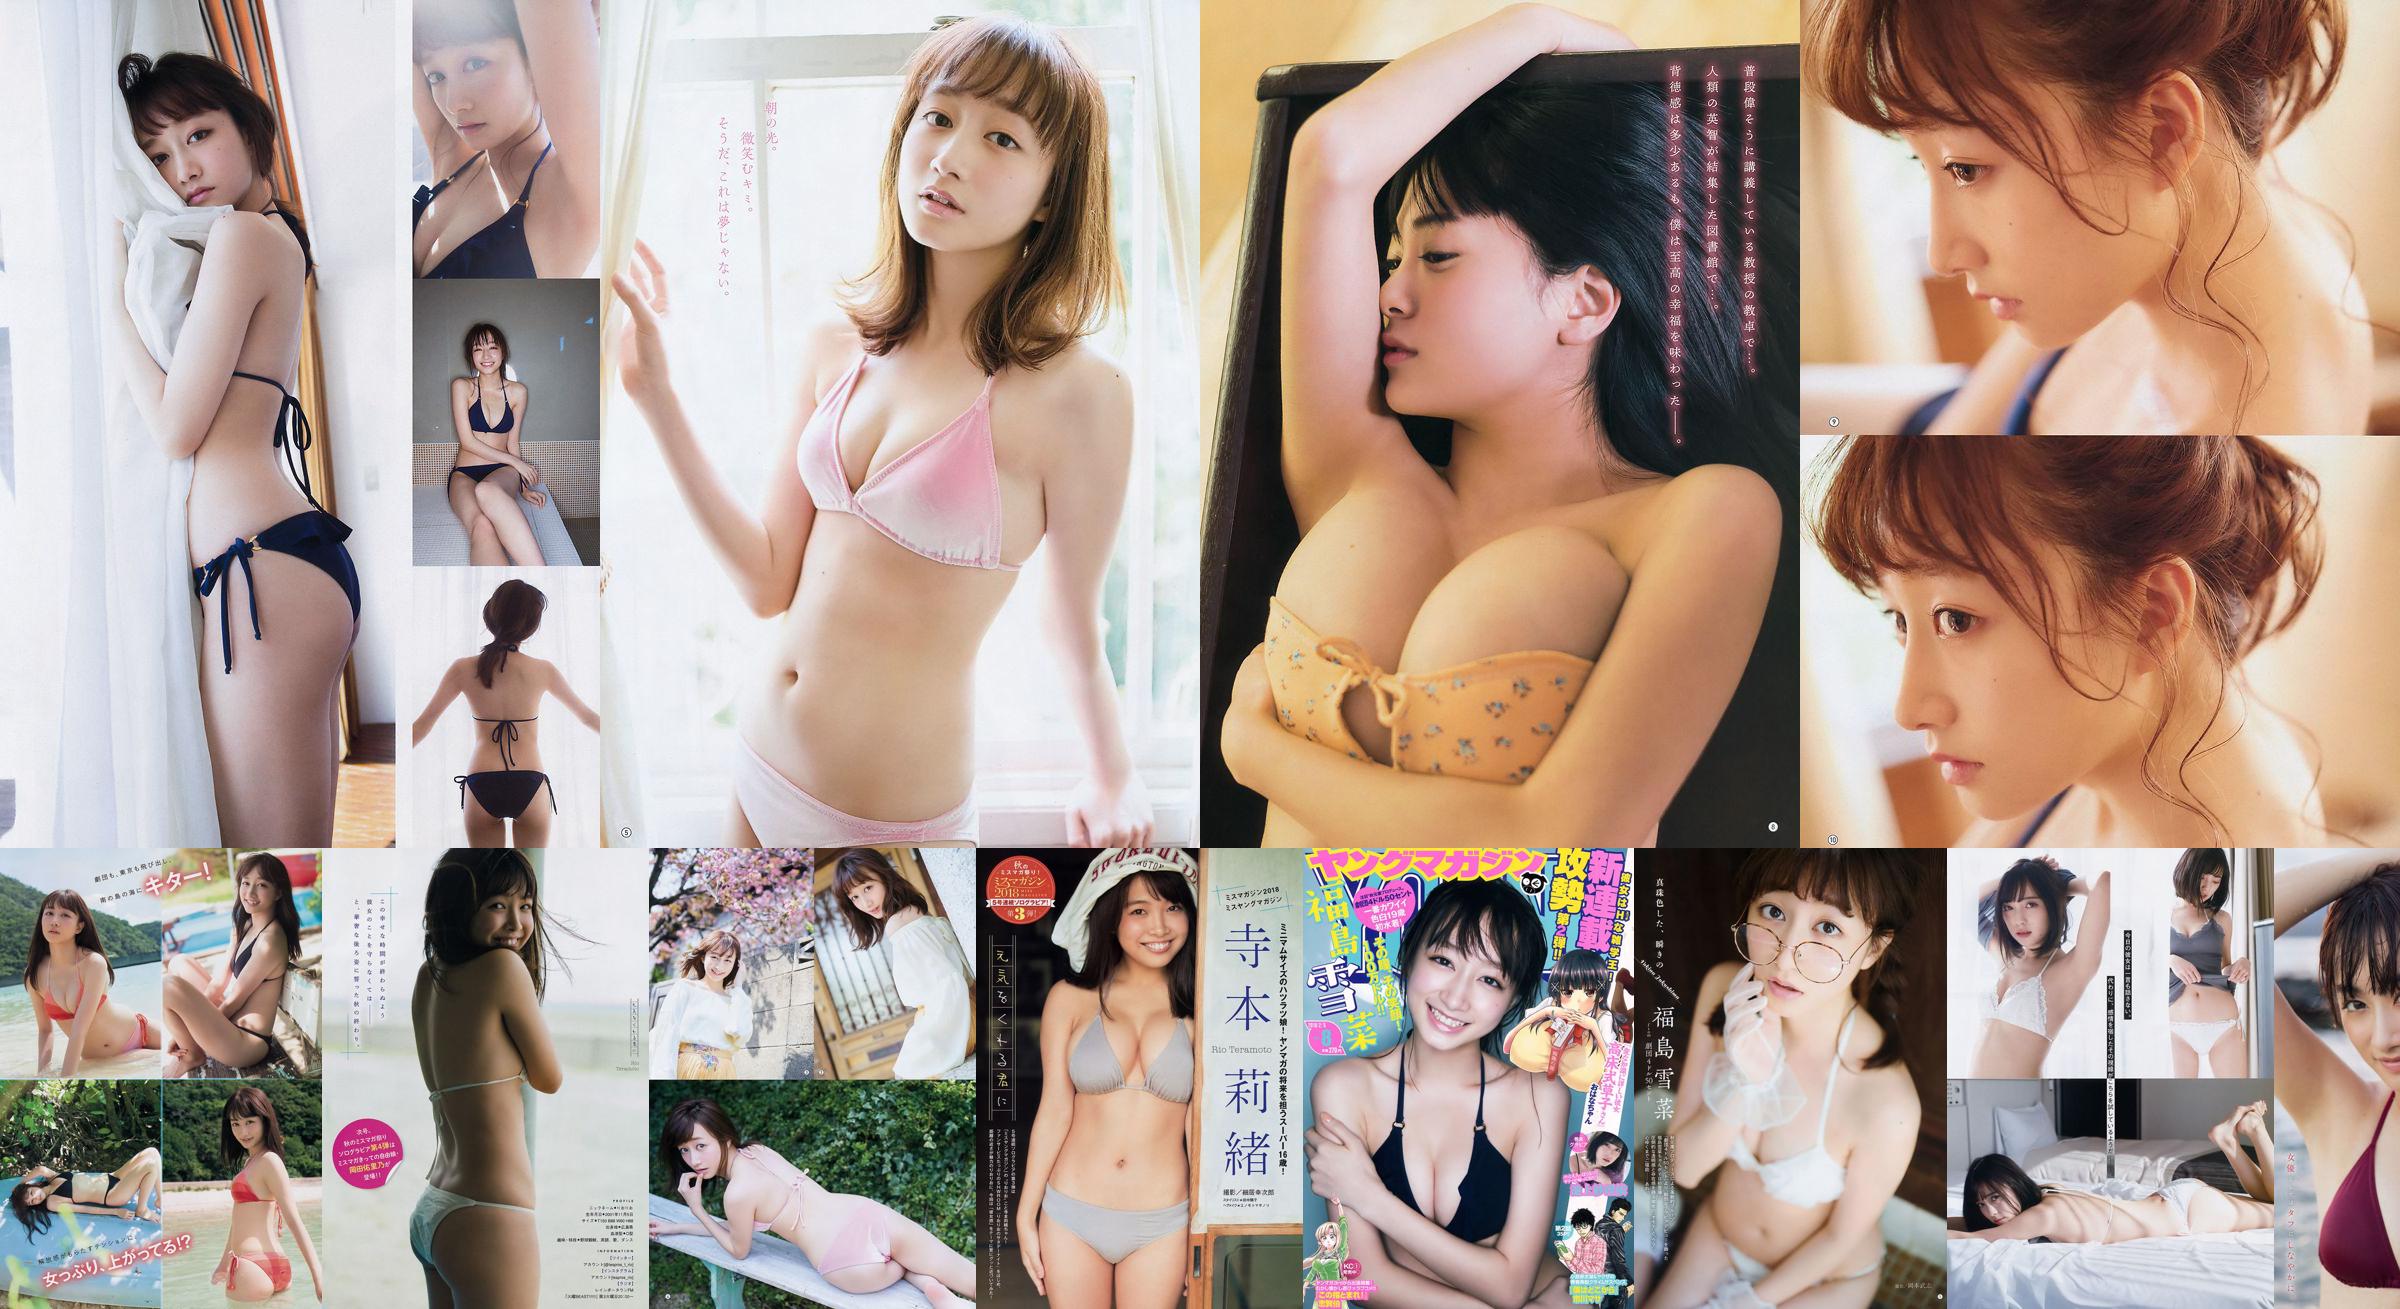 [Young Gangan] Yukina Fukushima RaMu 2018 No.10 Fotografía No.41f721 Página 2